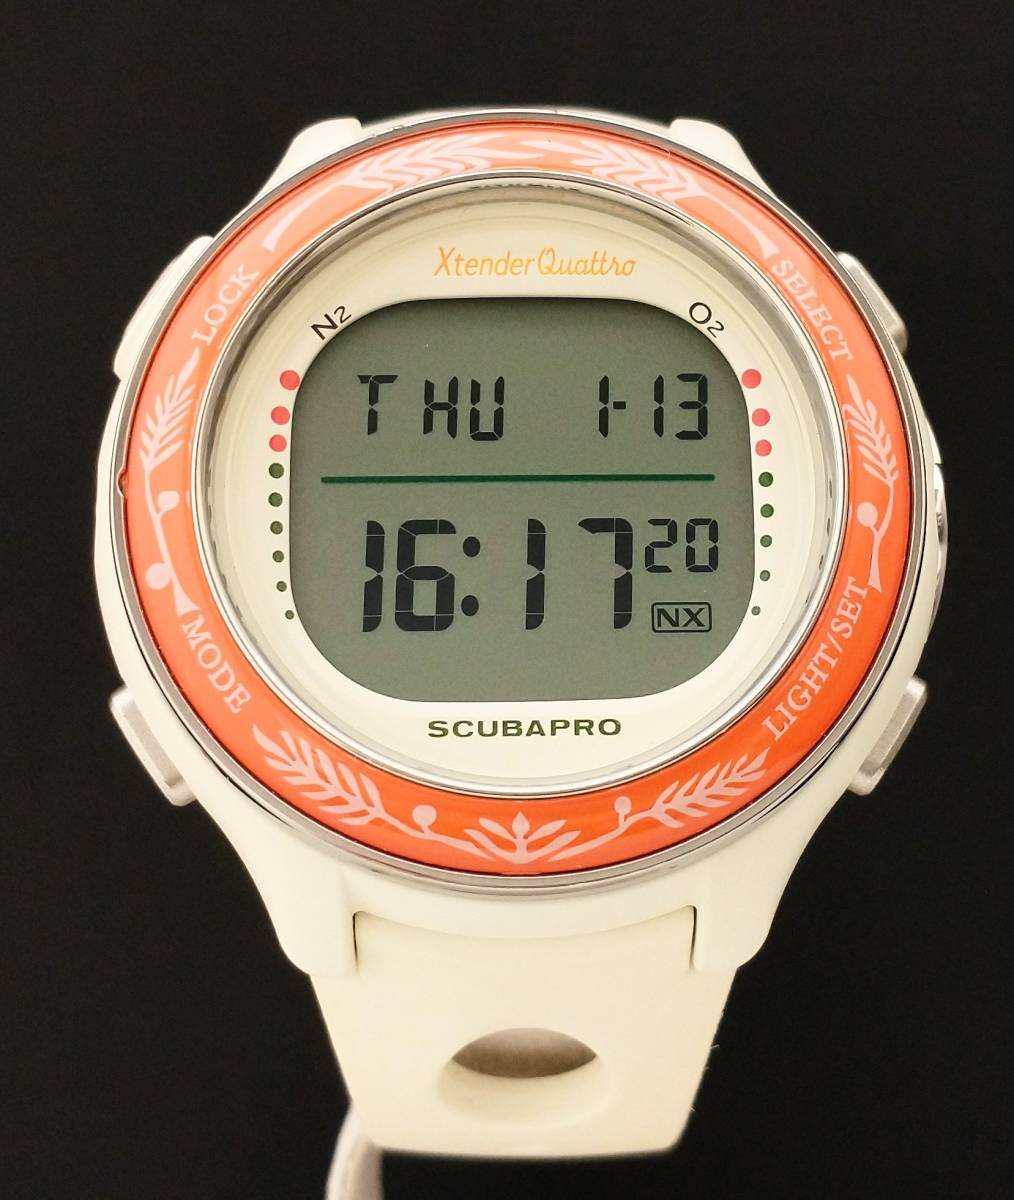 Xtender Quattro エクステンダークアトロ SCUBAPRO スキューバプロ DW40-4A10 ホワイト×オレンジ デジタル 電池式  メンズ 腕時計